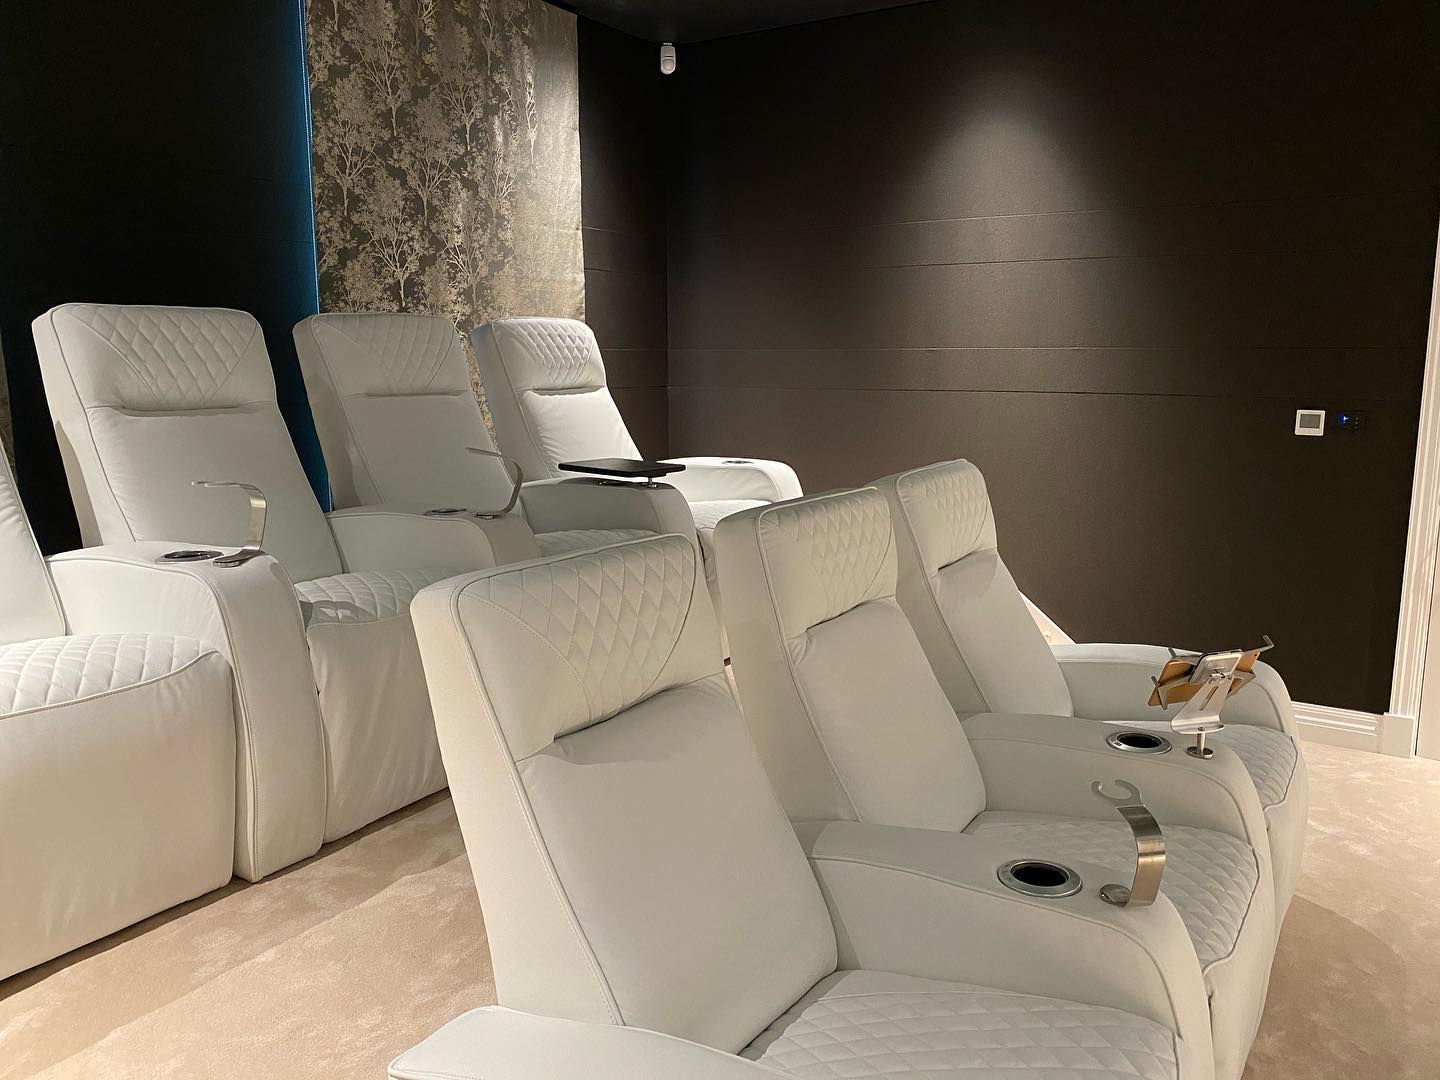 HCM Home Cinema Modules, su<br />
vrhunske personalizirane motorne<br />
fotelje za kućno kino.